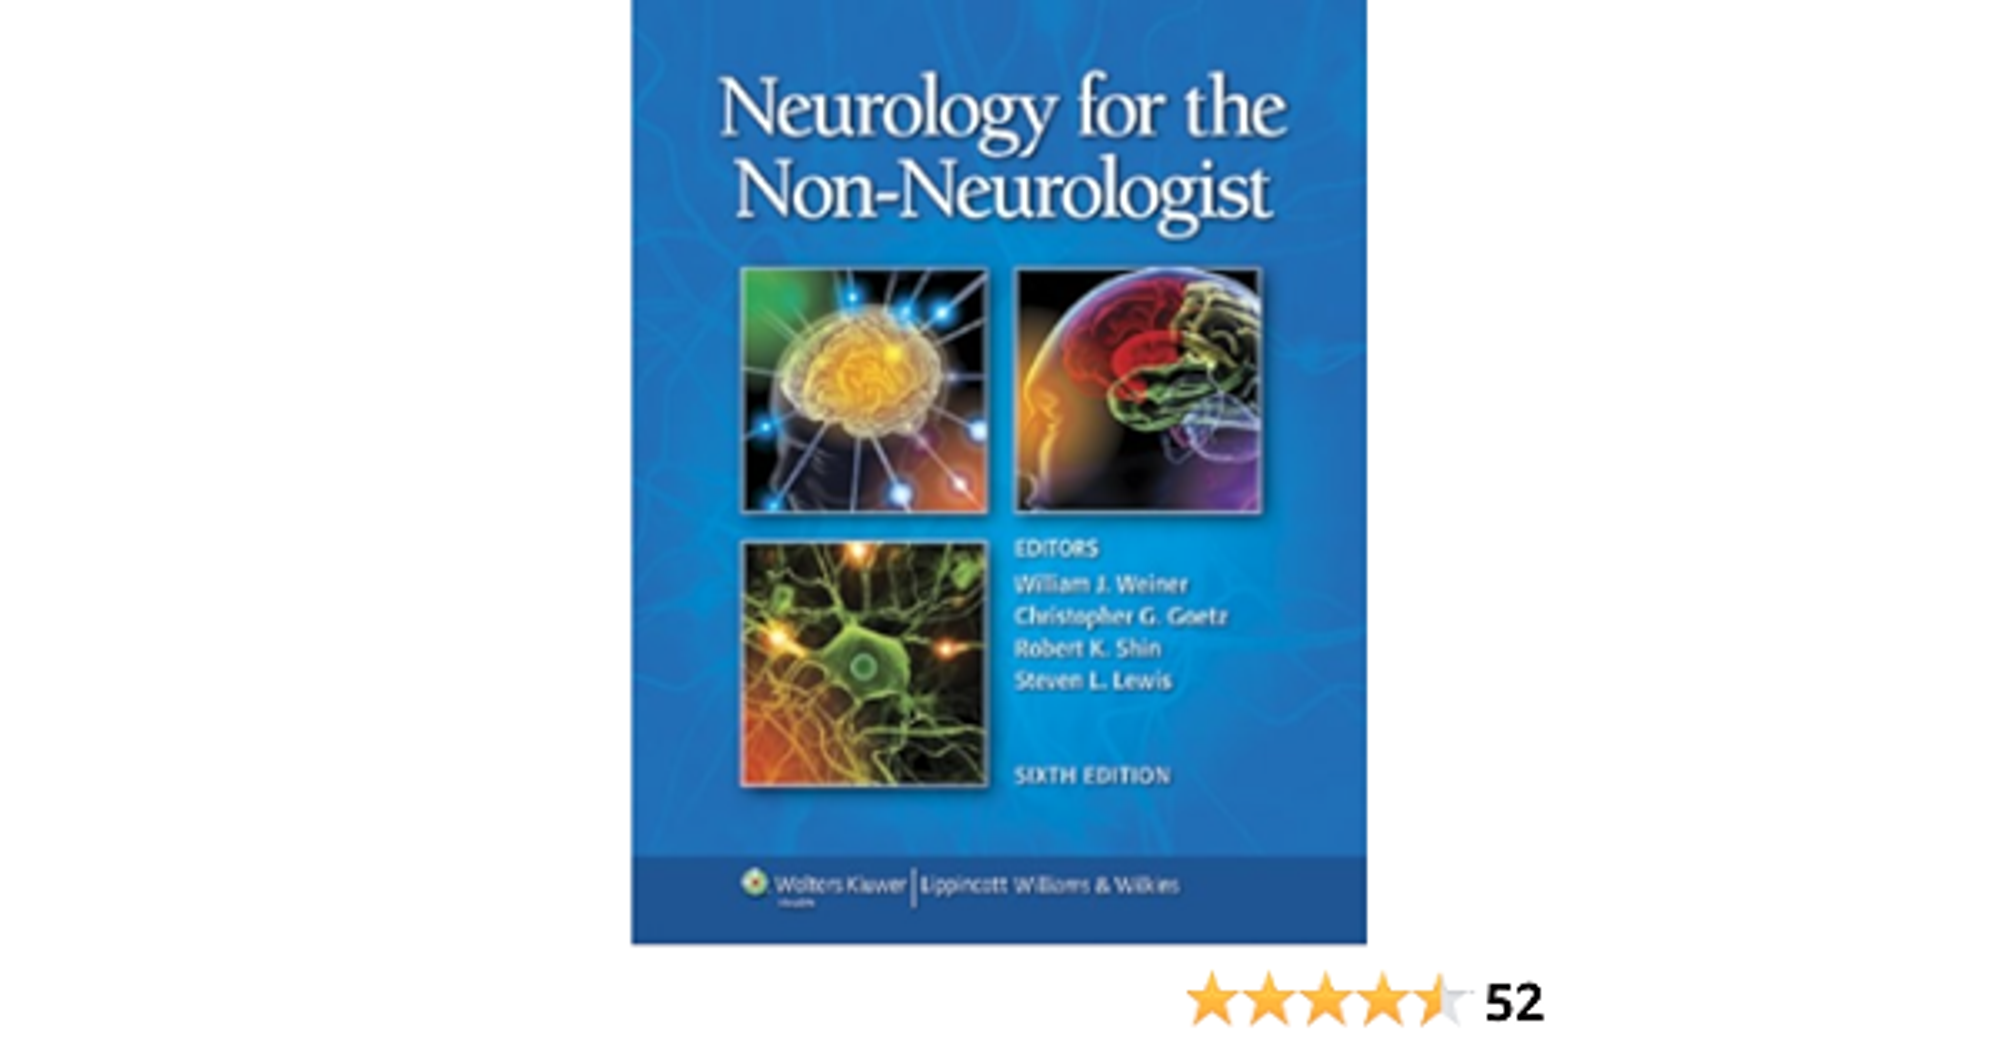 Neurology for the Non-Neurologist (Weiner, Neurology for the Non-Neurologist)